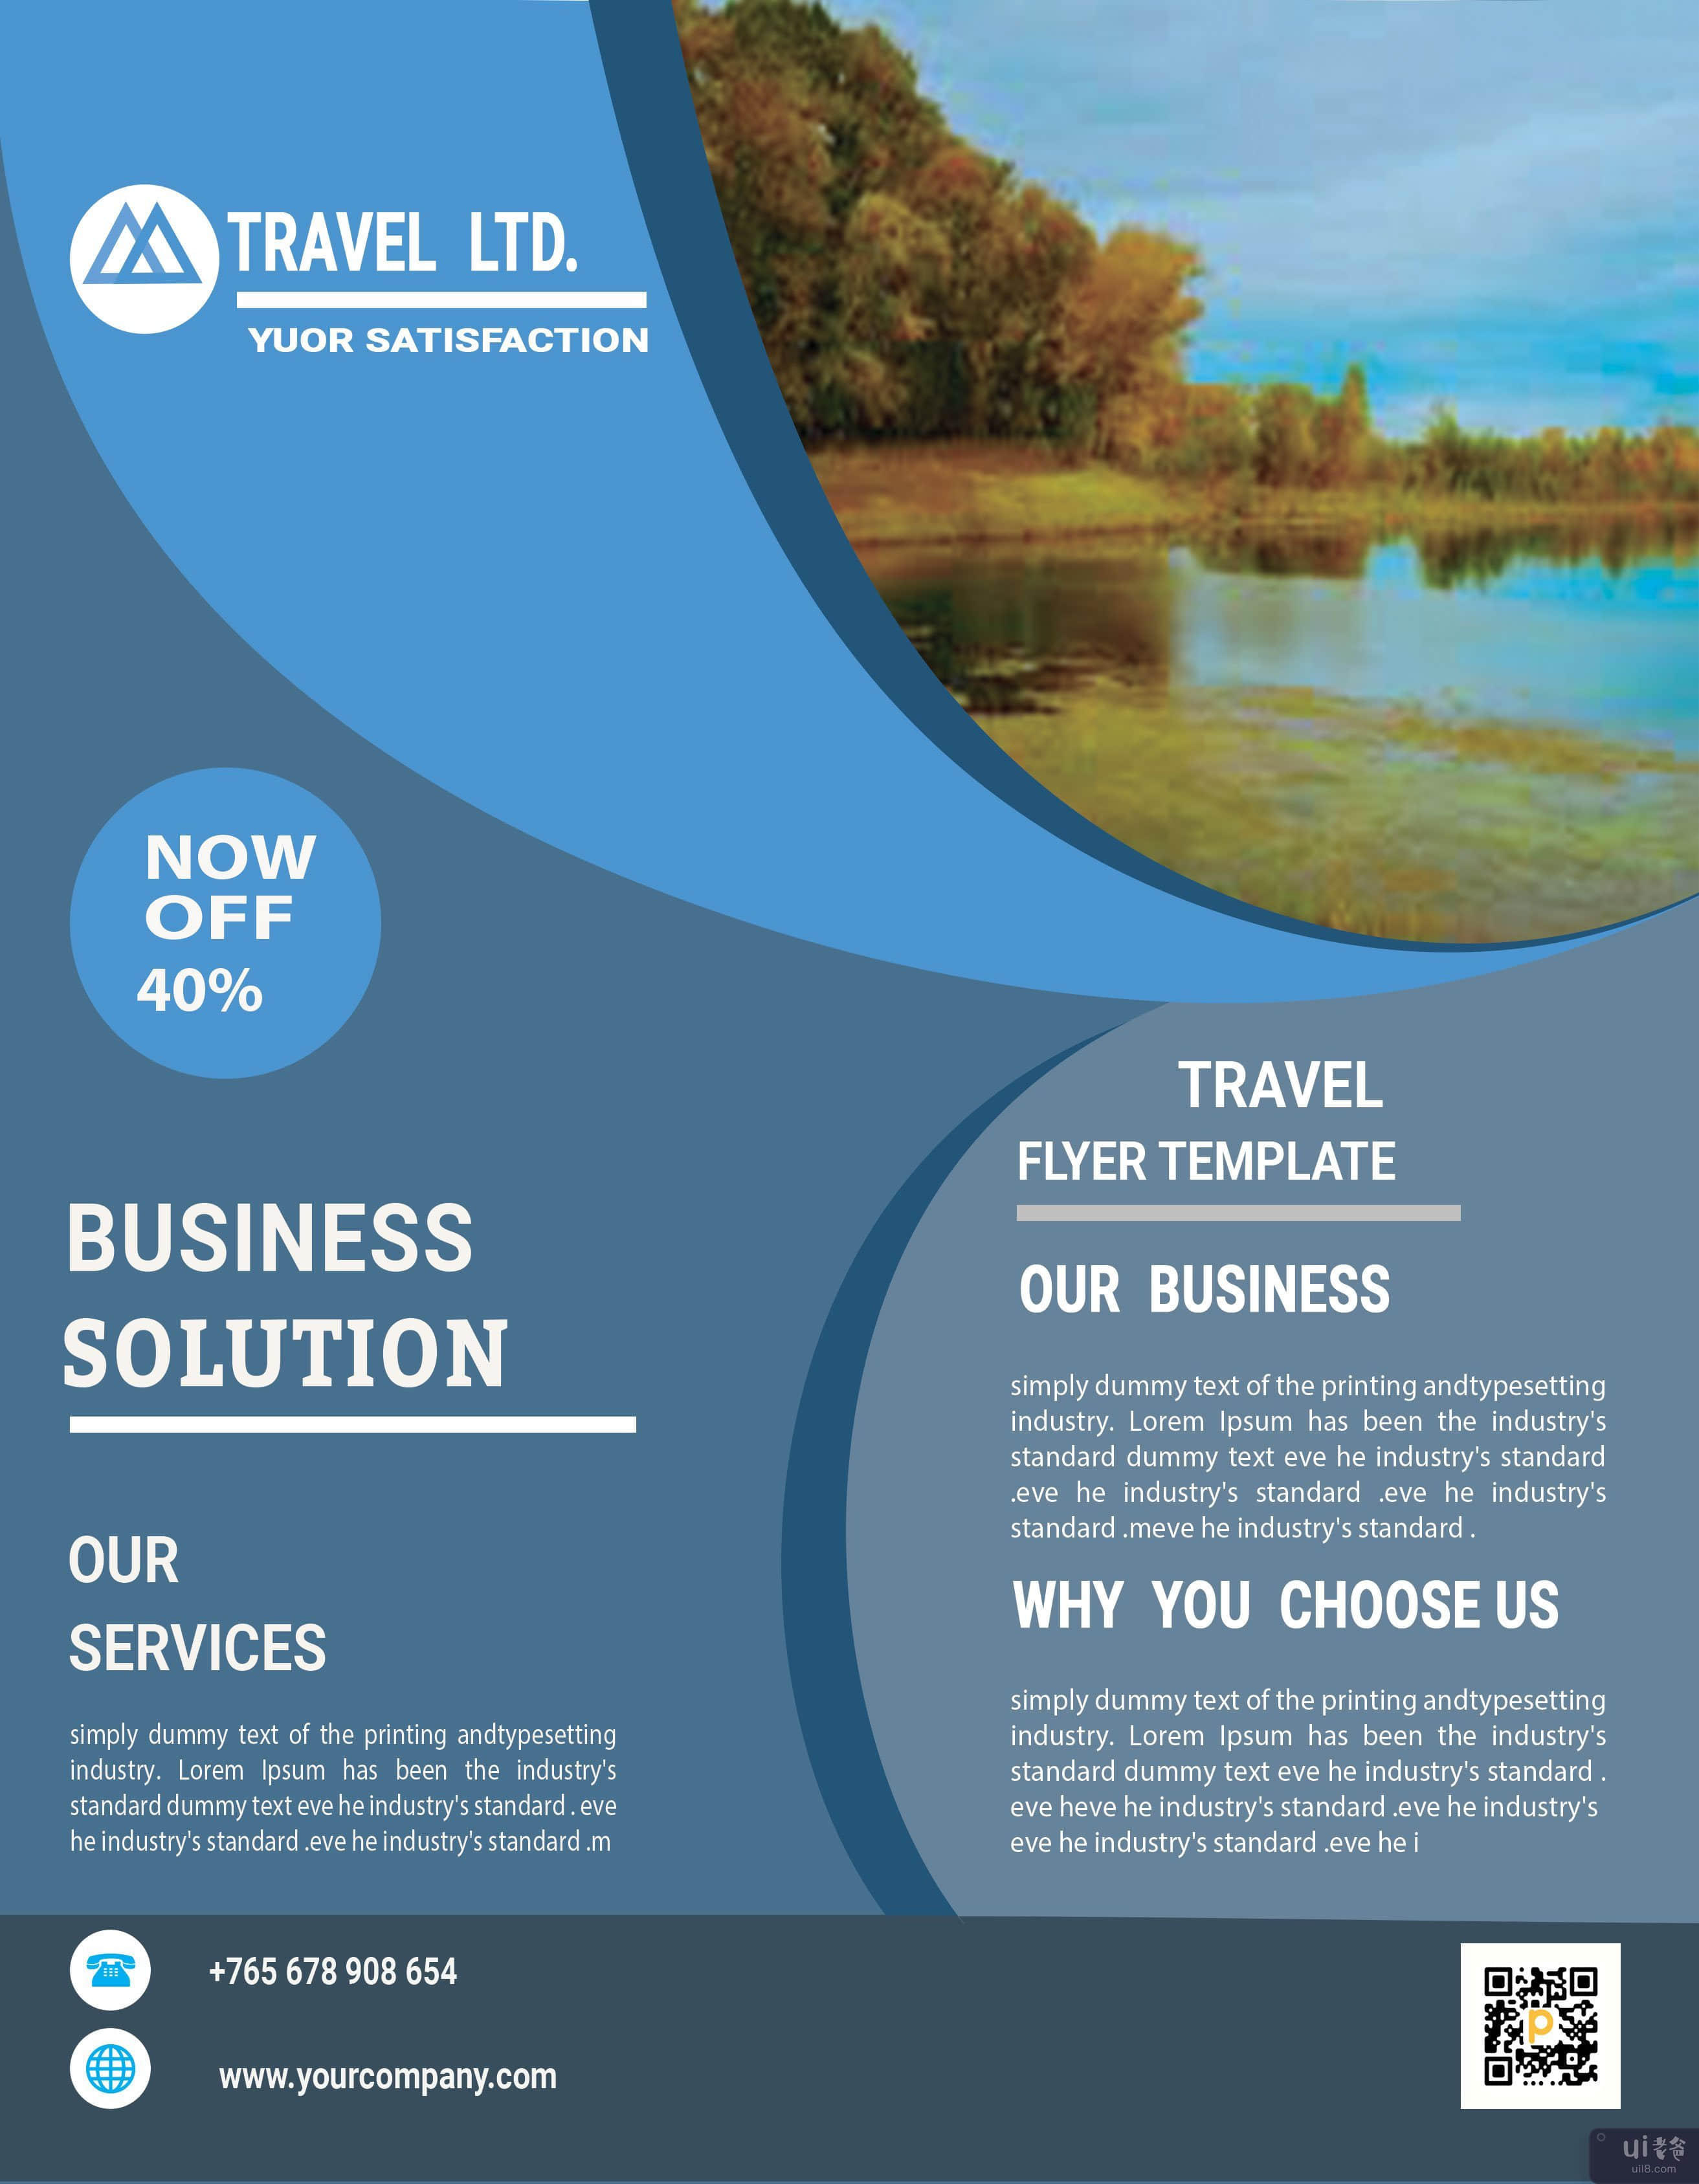 公司旅行传单模板(Corporate Travel Flyer Template)插图5